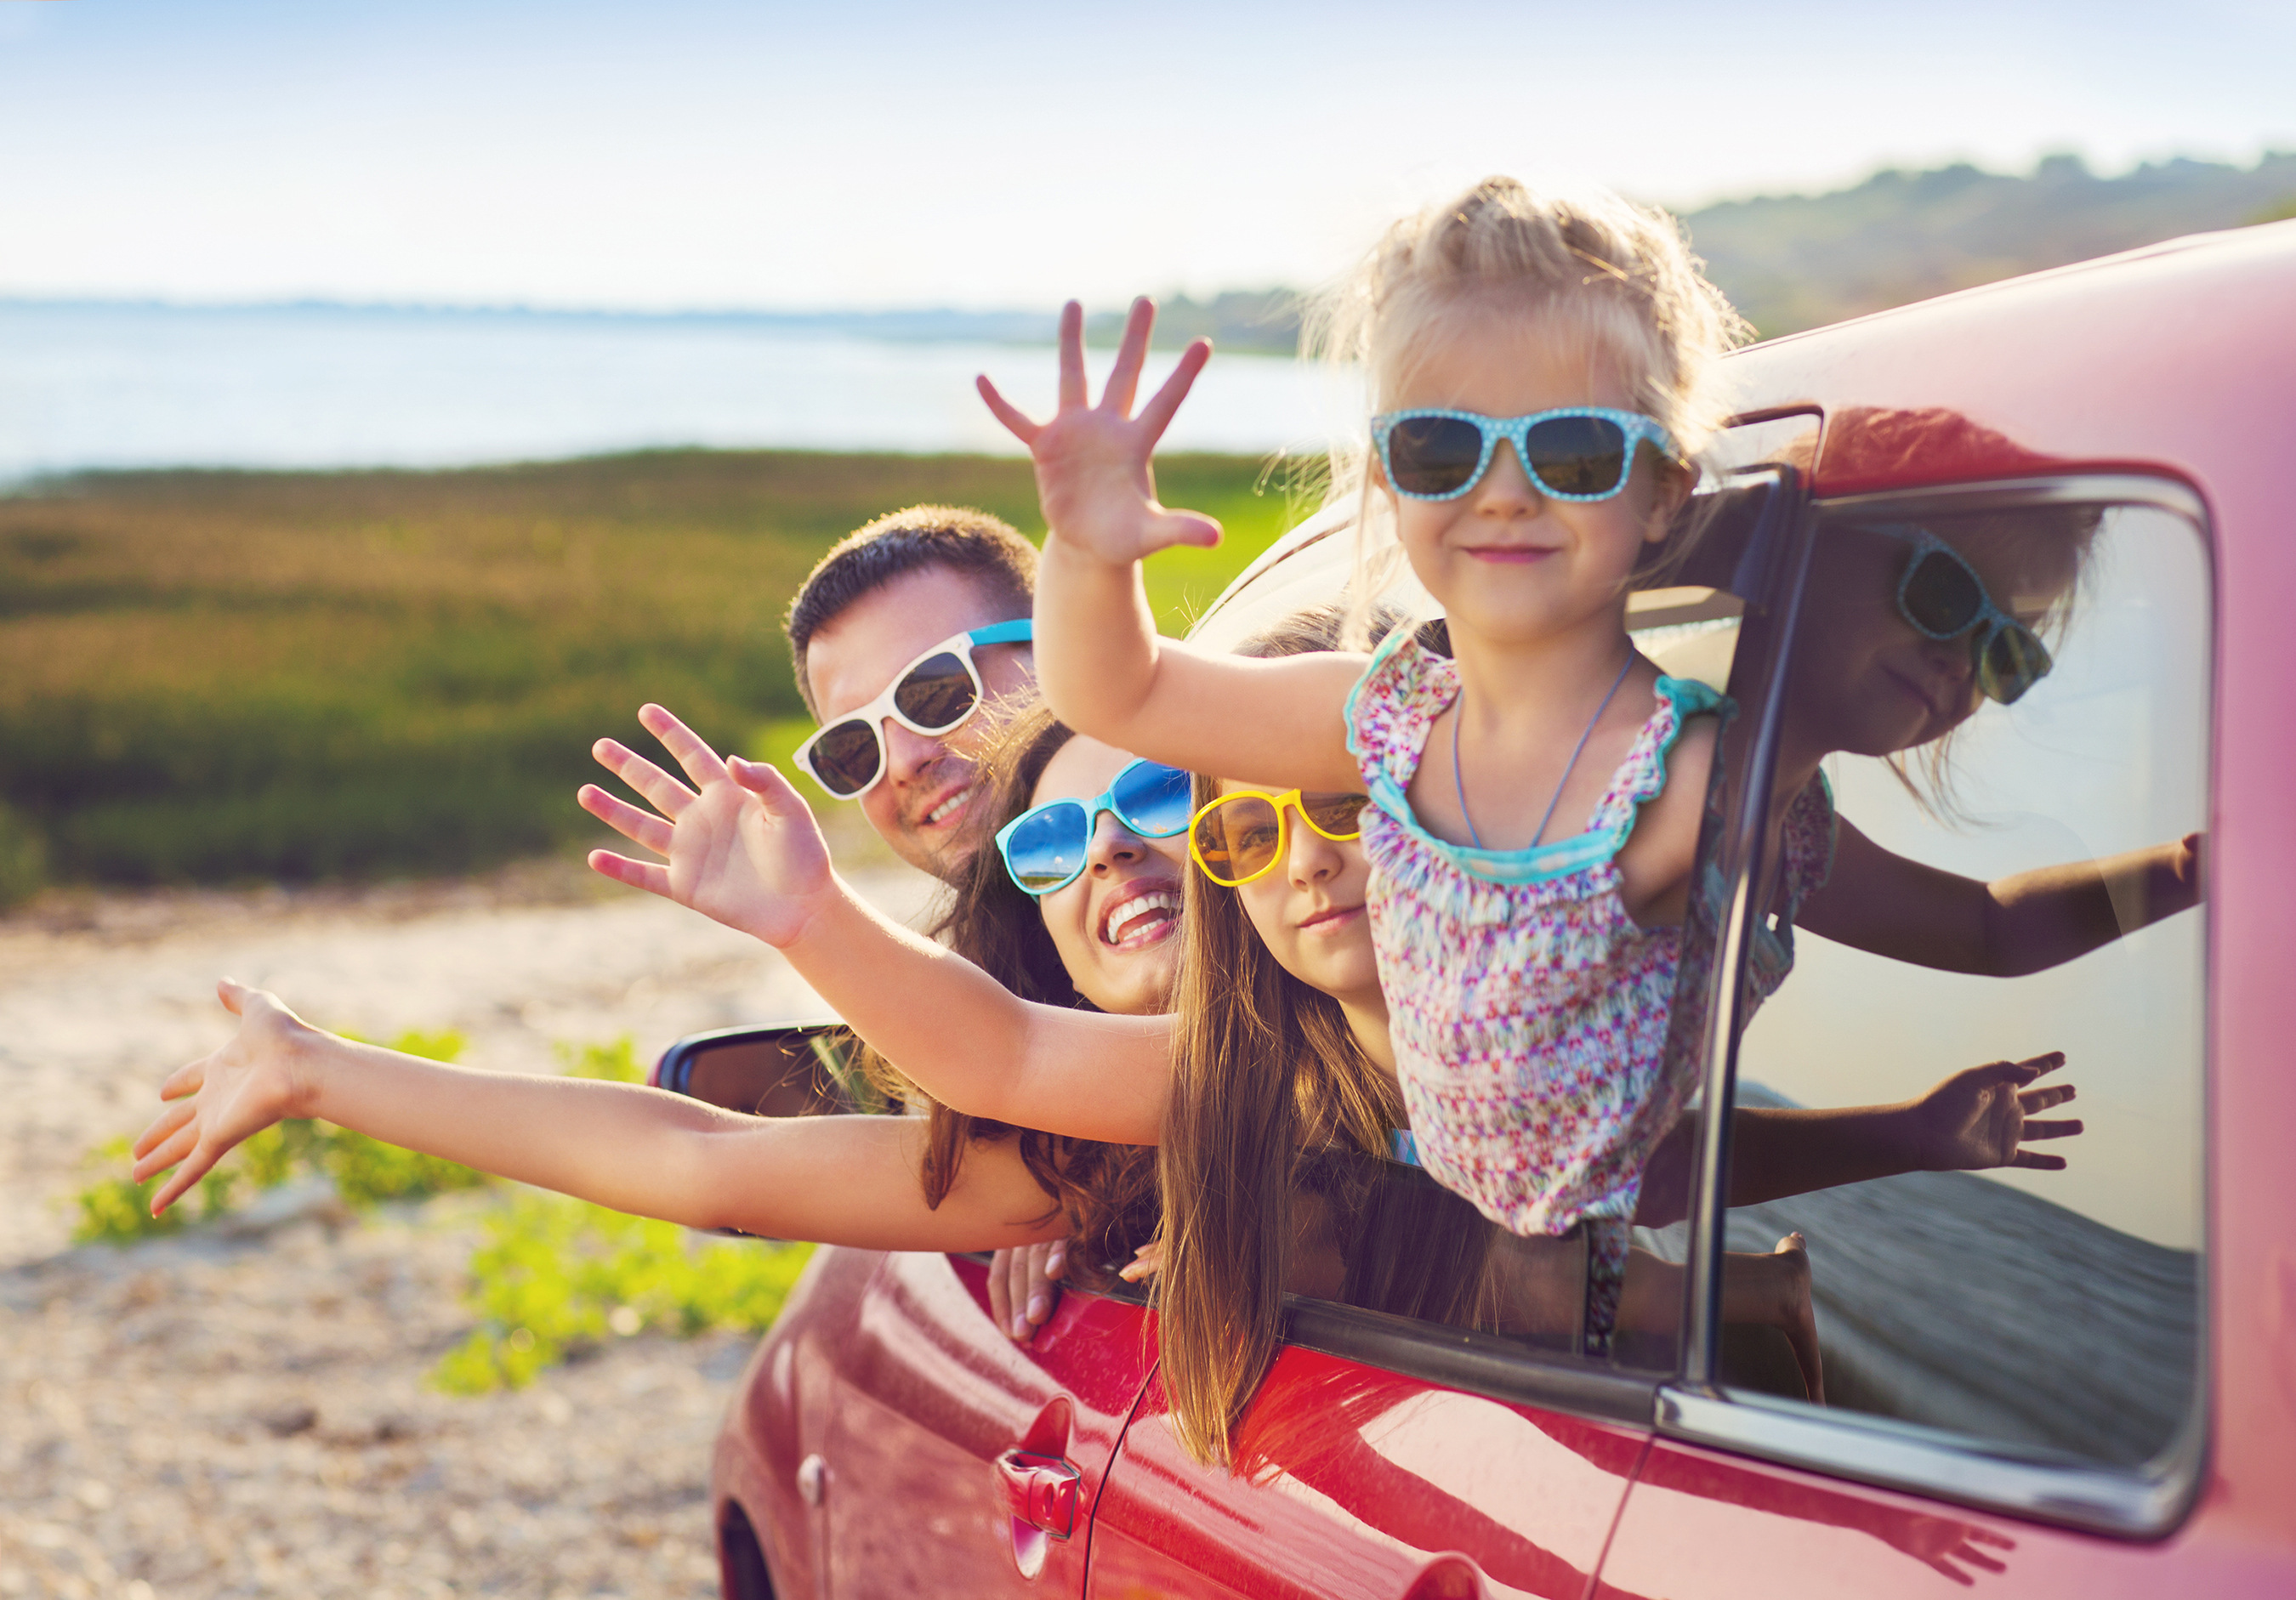 Kifárasztott a családi vakáció: így lazuljunk el szülőként a nyaraláson (x)  - Blikk